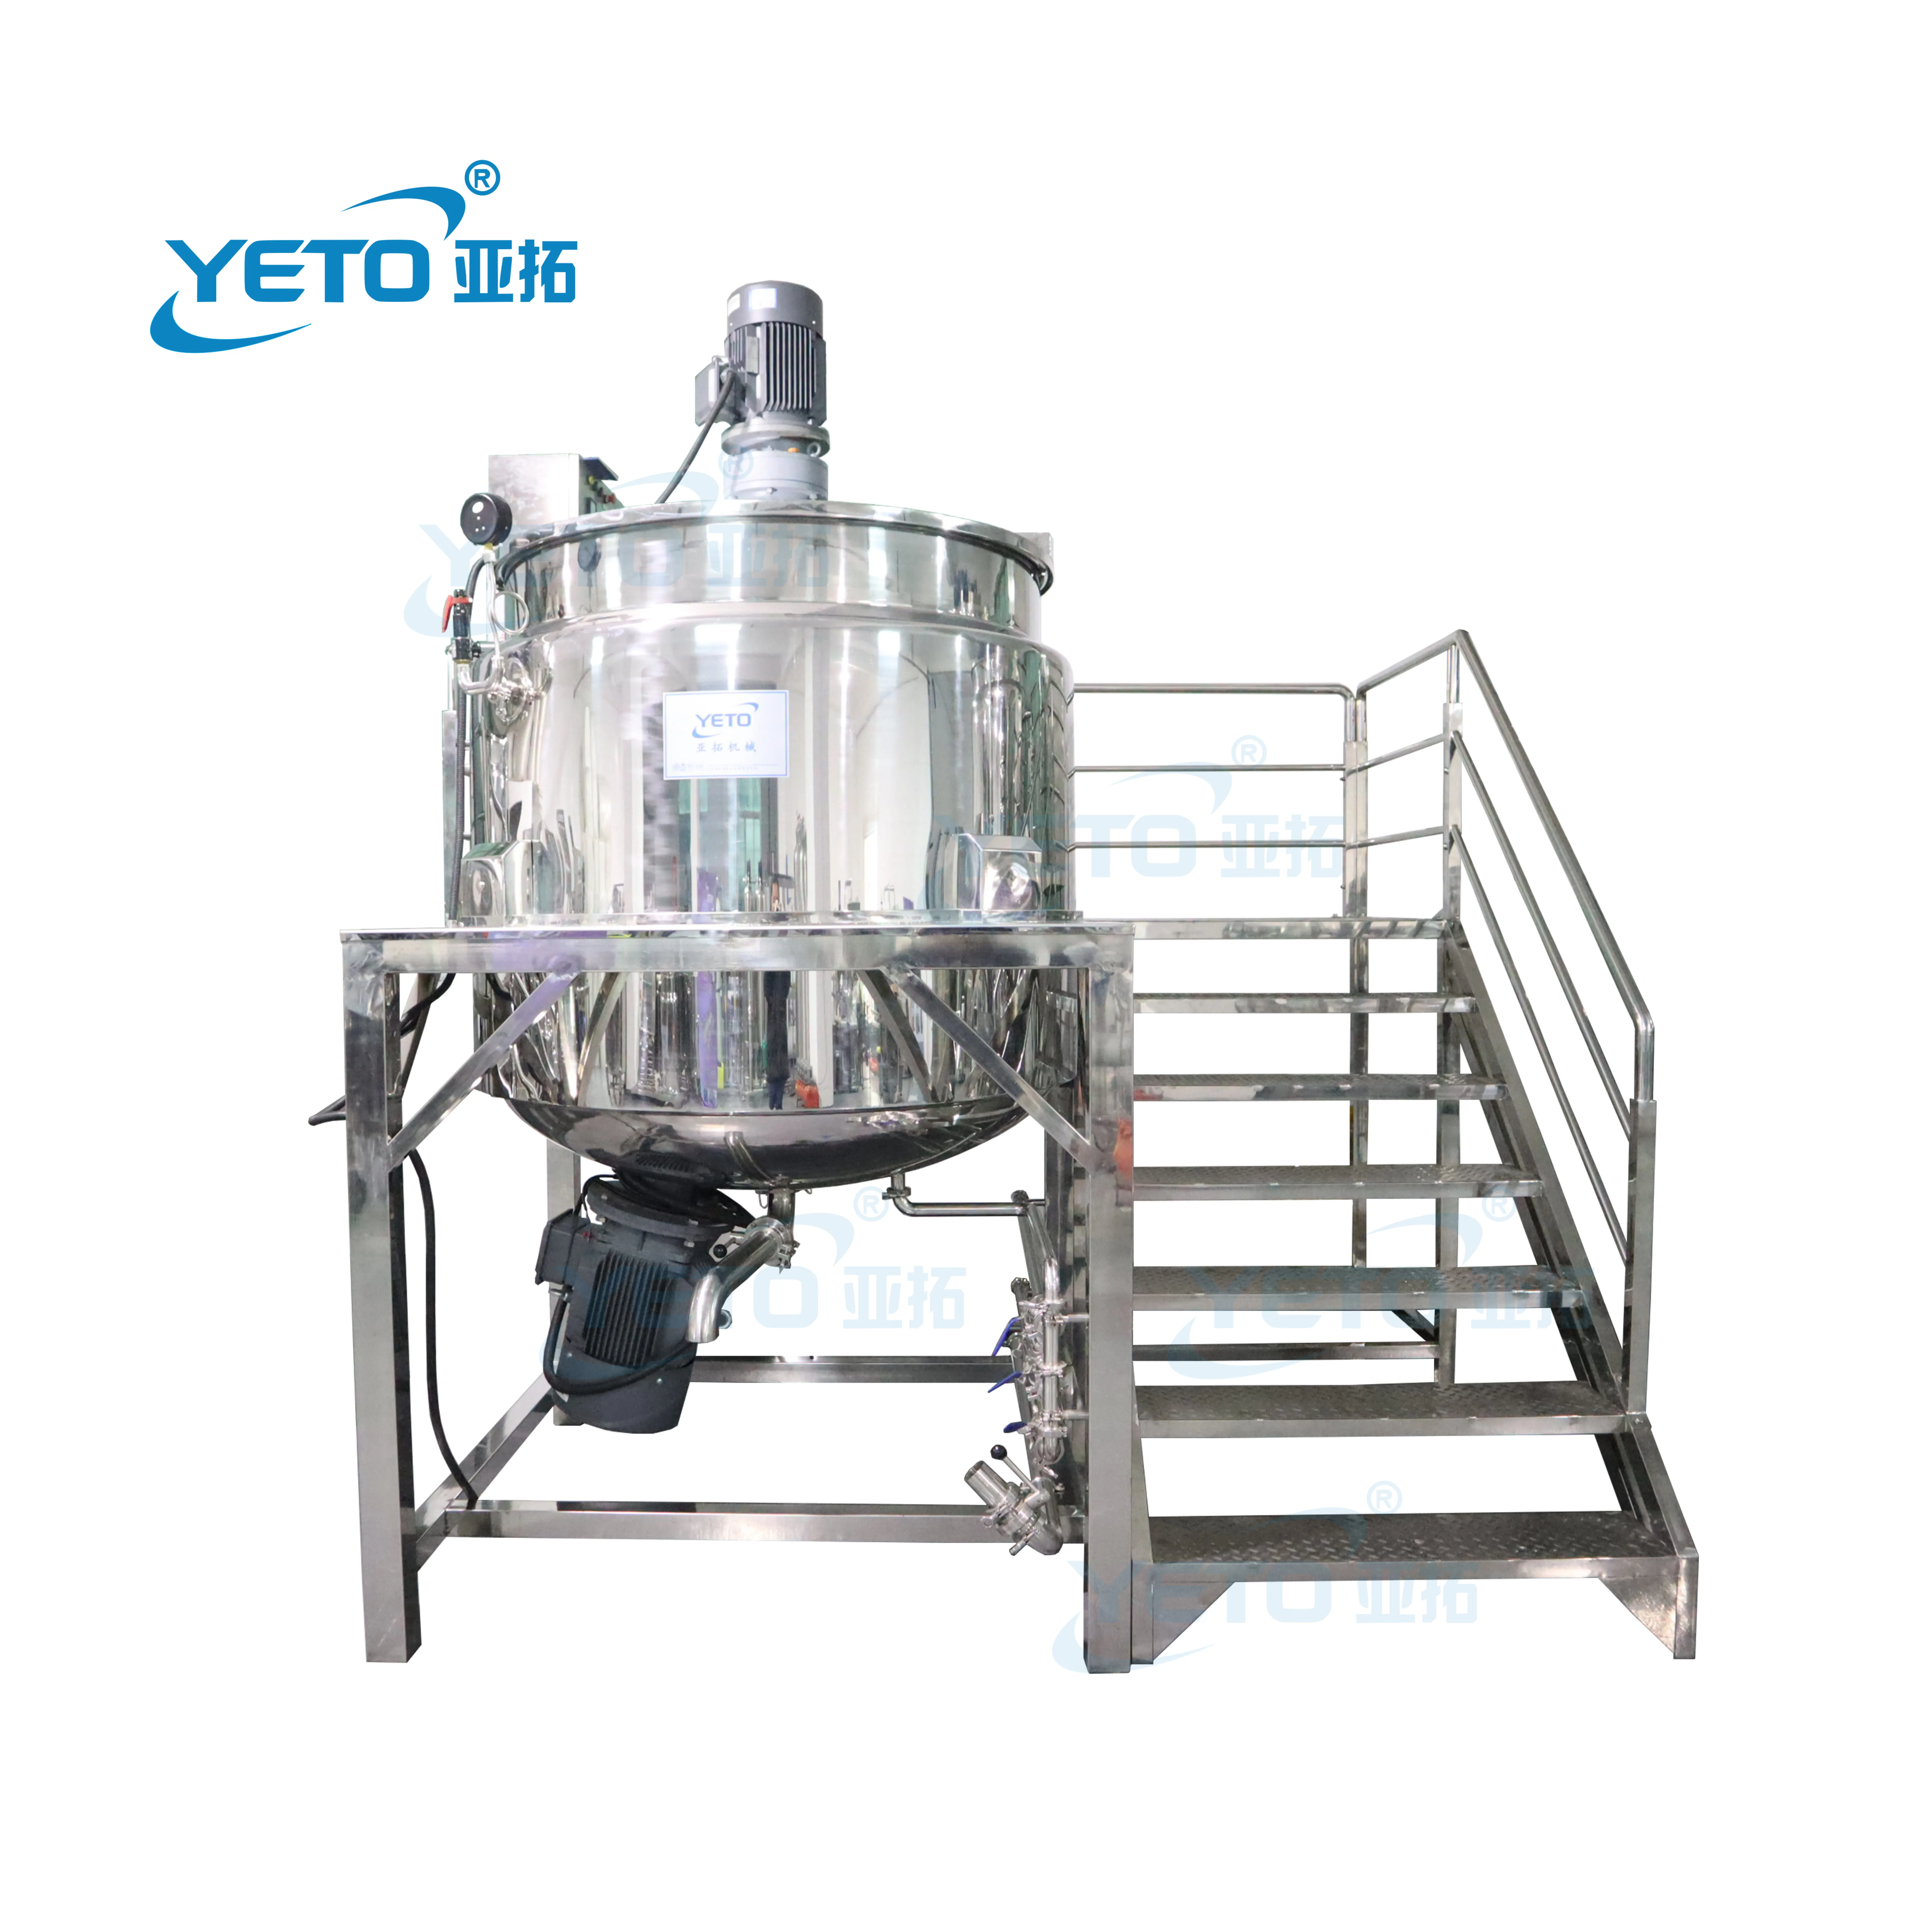 YETO 1000L mélangeur d'émulsifiant chimique industriel shampooing lotion liquides savon détergent liquide de lavage des mains faisant la machine